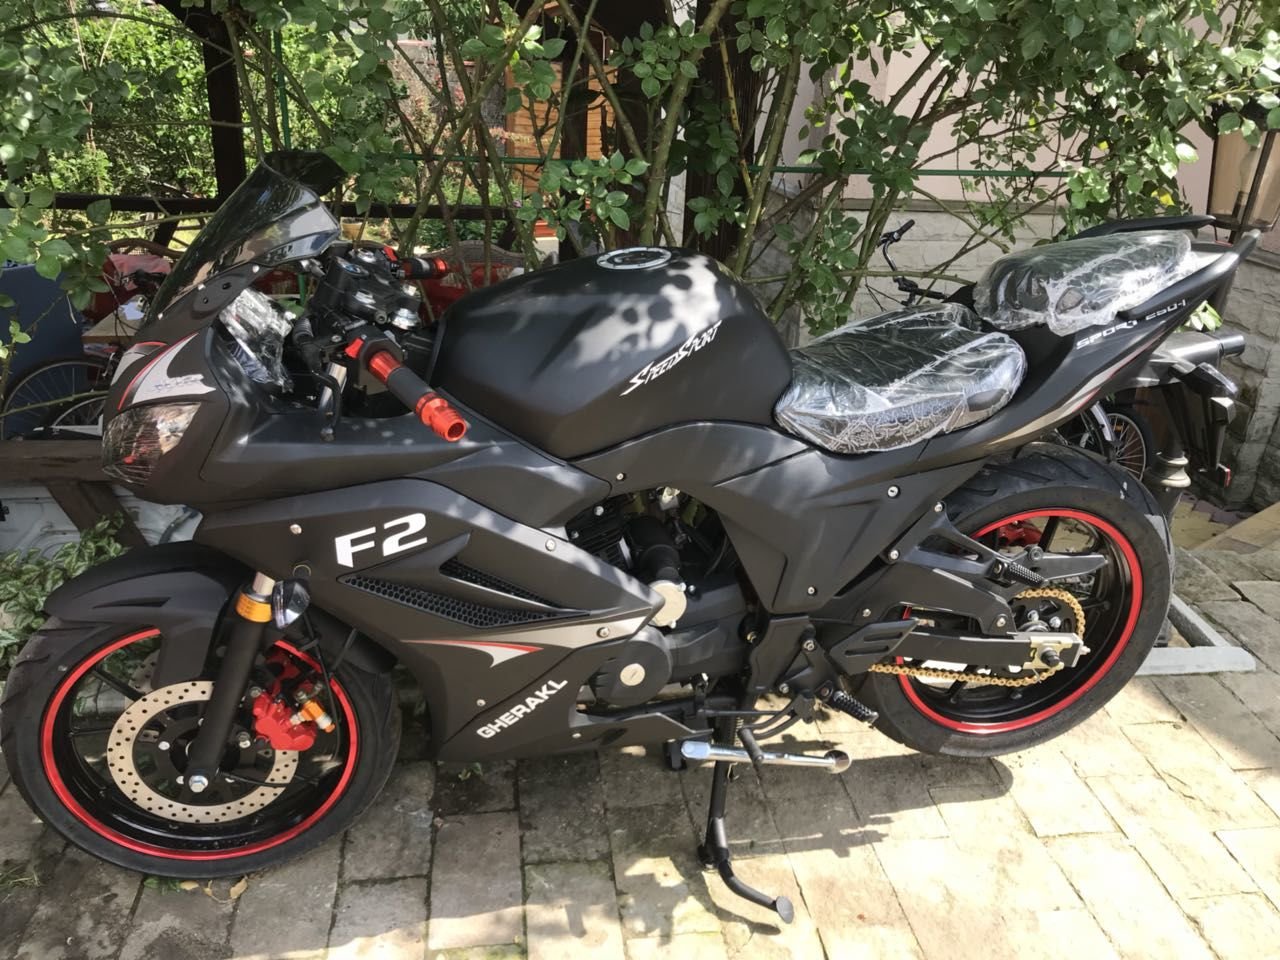 Авито купить мотоцикл в ростовской